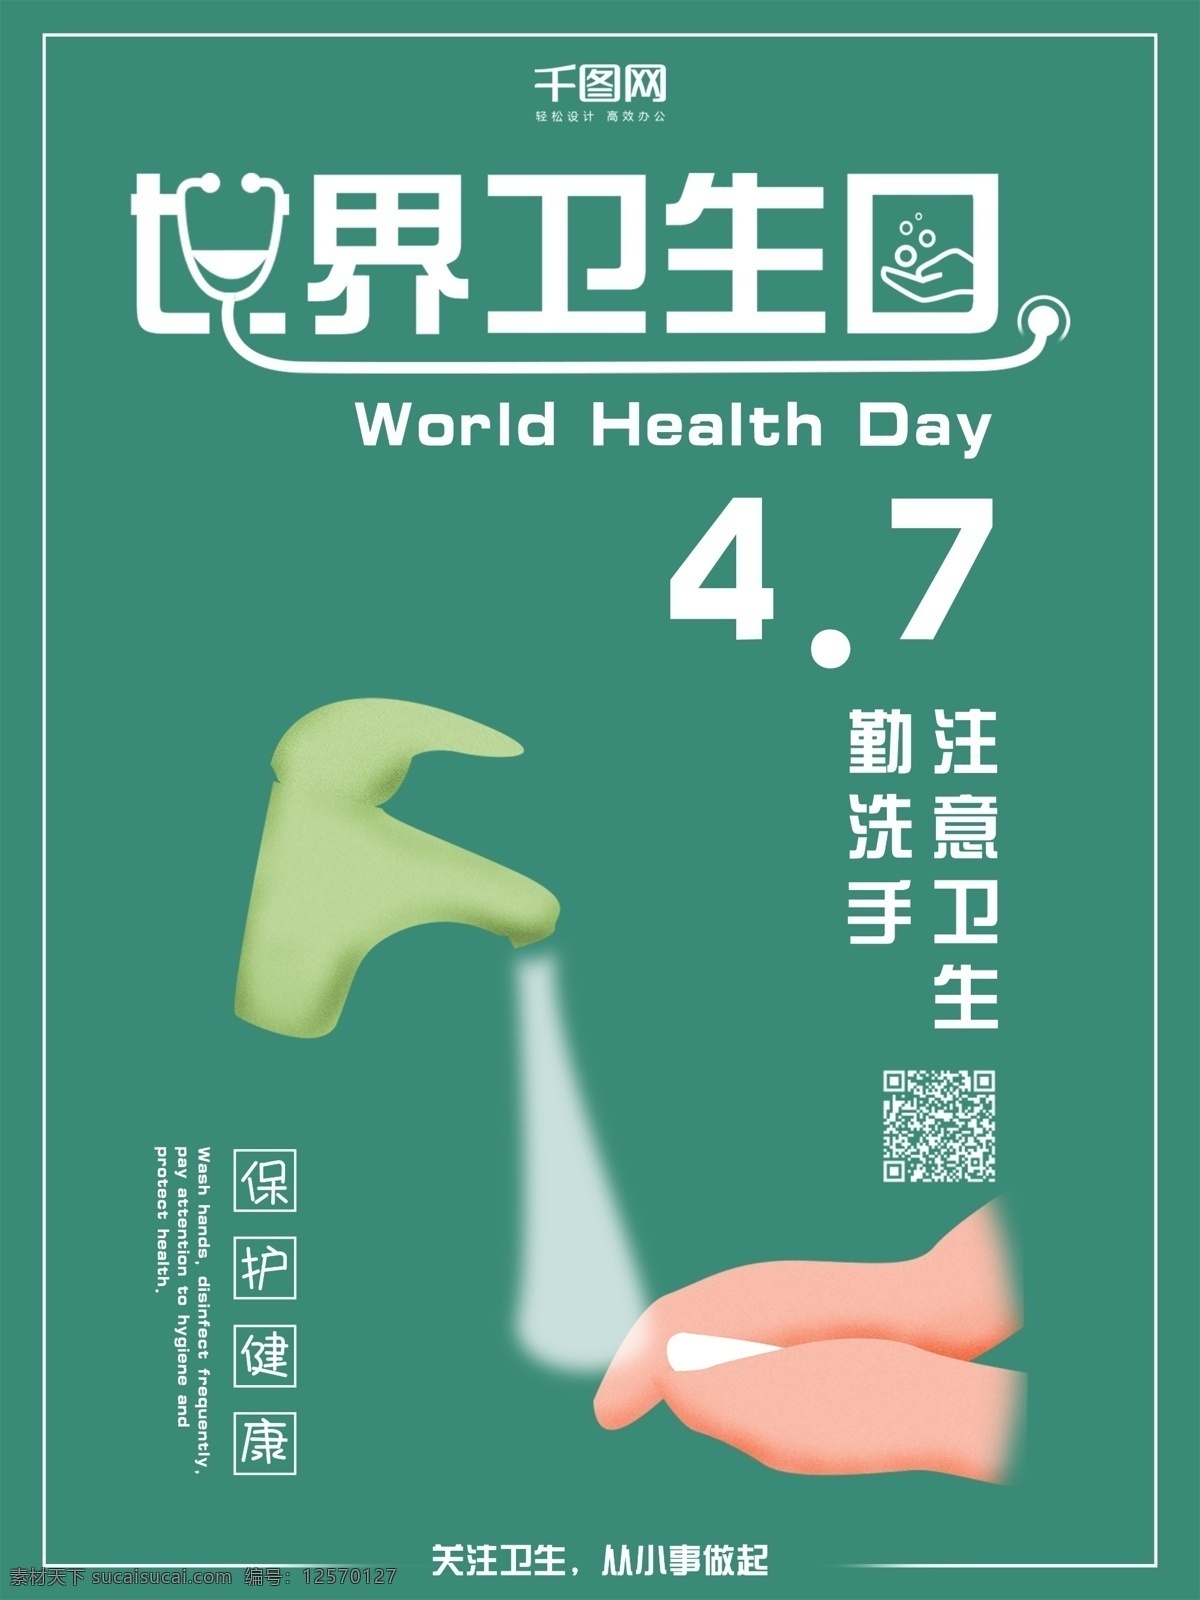 世界 卫生日 注意 卫生 宣传海报 世界卫生日 宣传 海报 注意卫生 保护健康